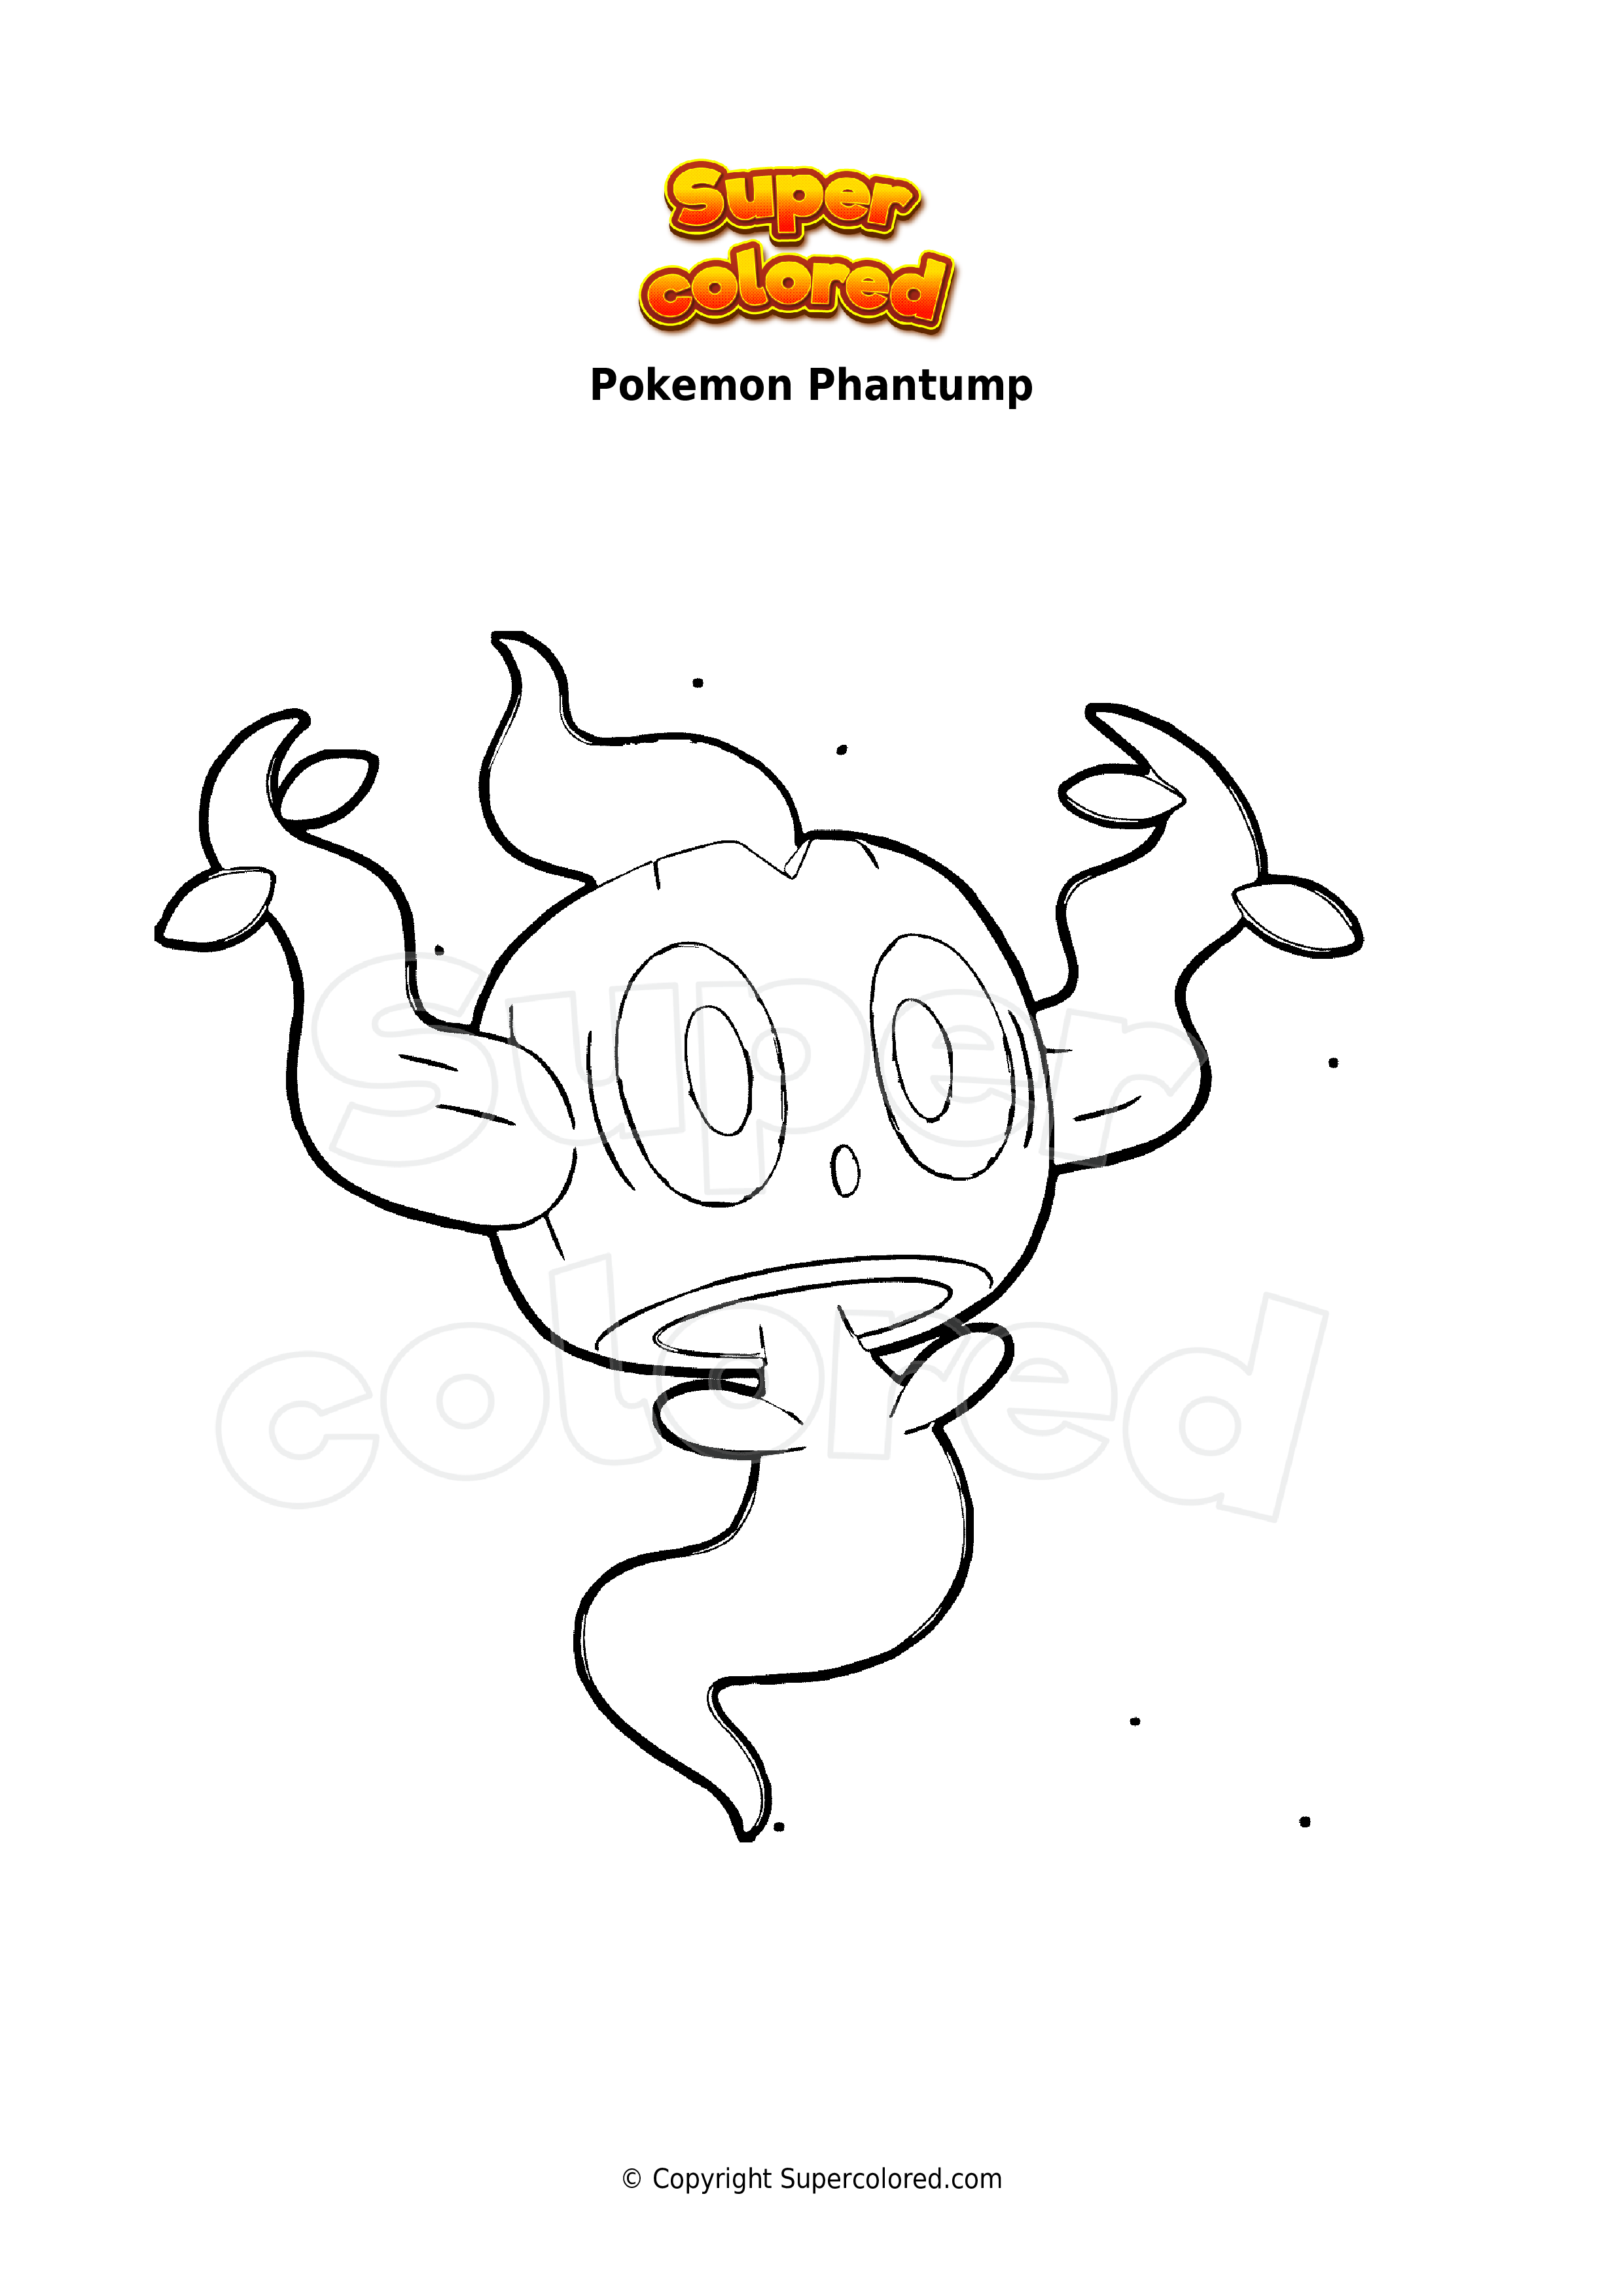 Coloring page Pokemon Phantump - Supercolored.com